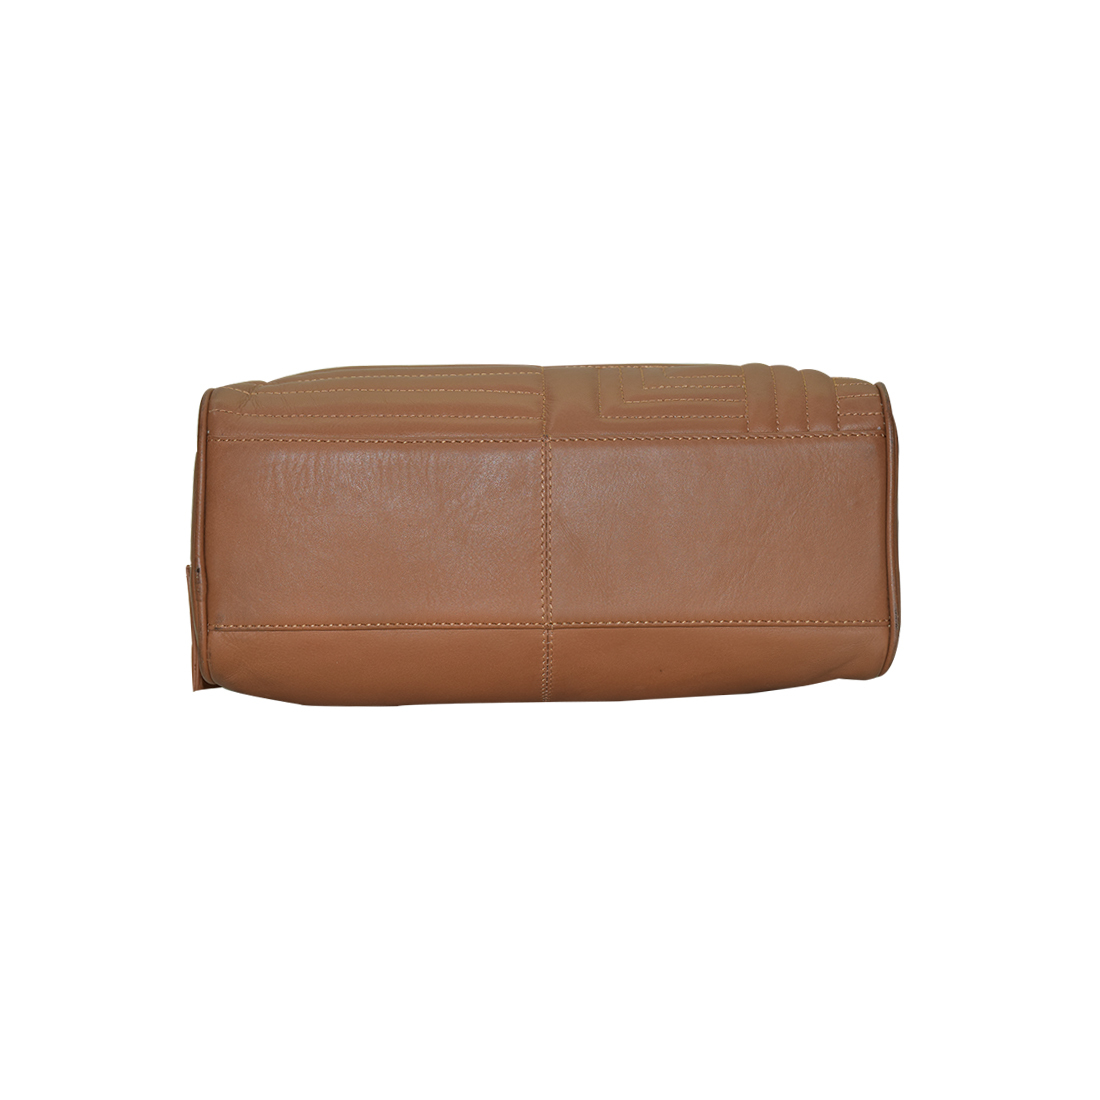 Finished Leather Handbag Color Tan